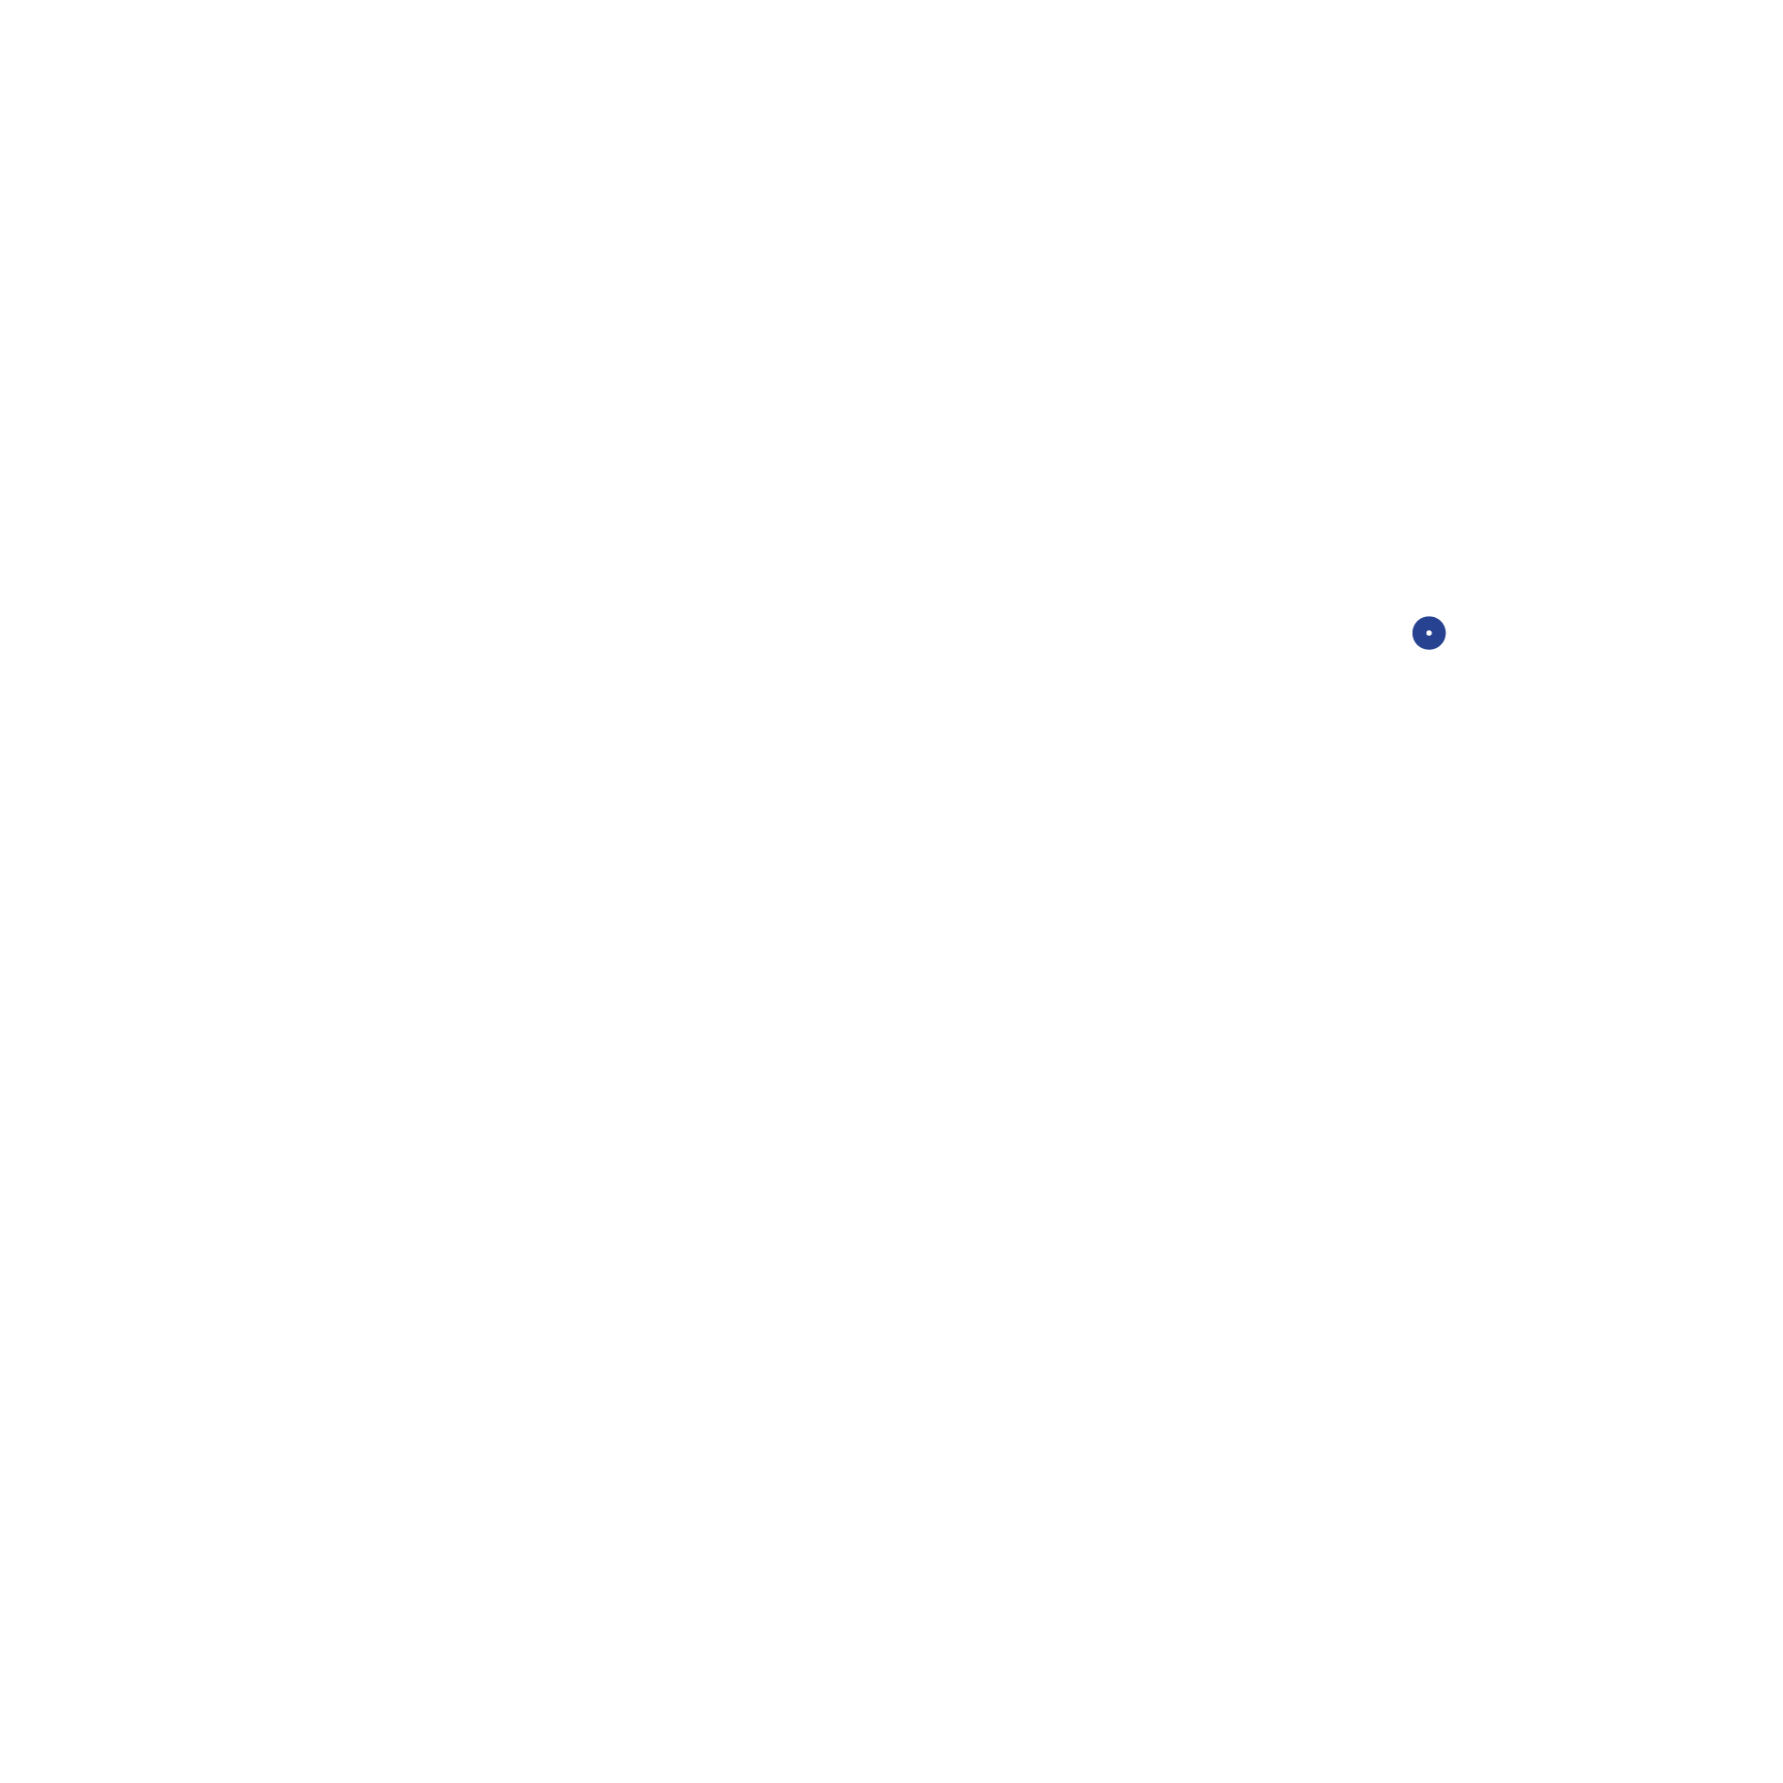 SalsaenlaWeb